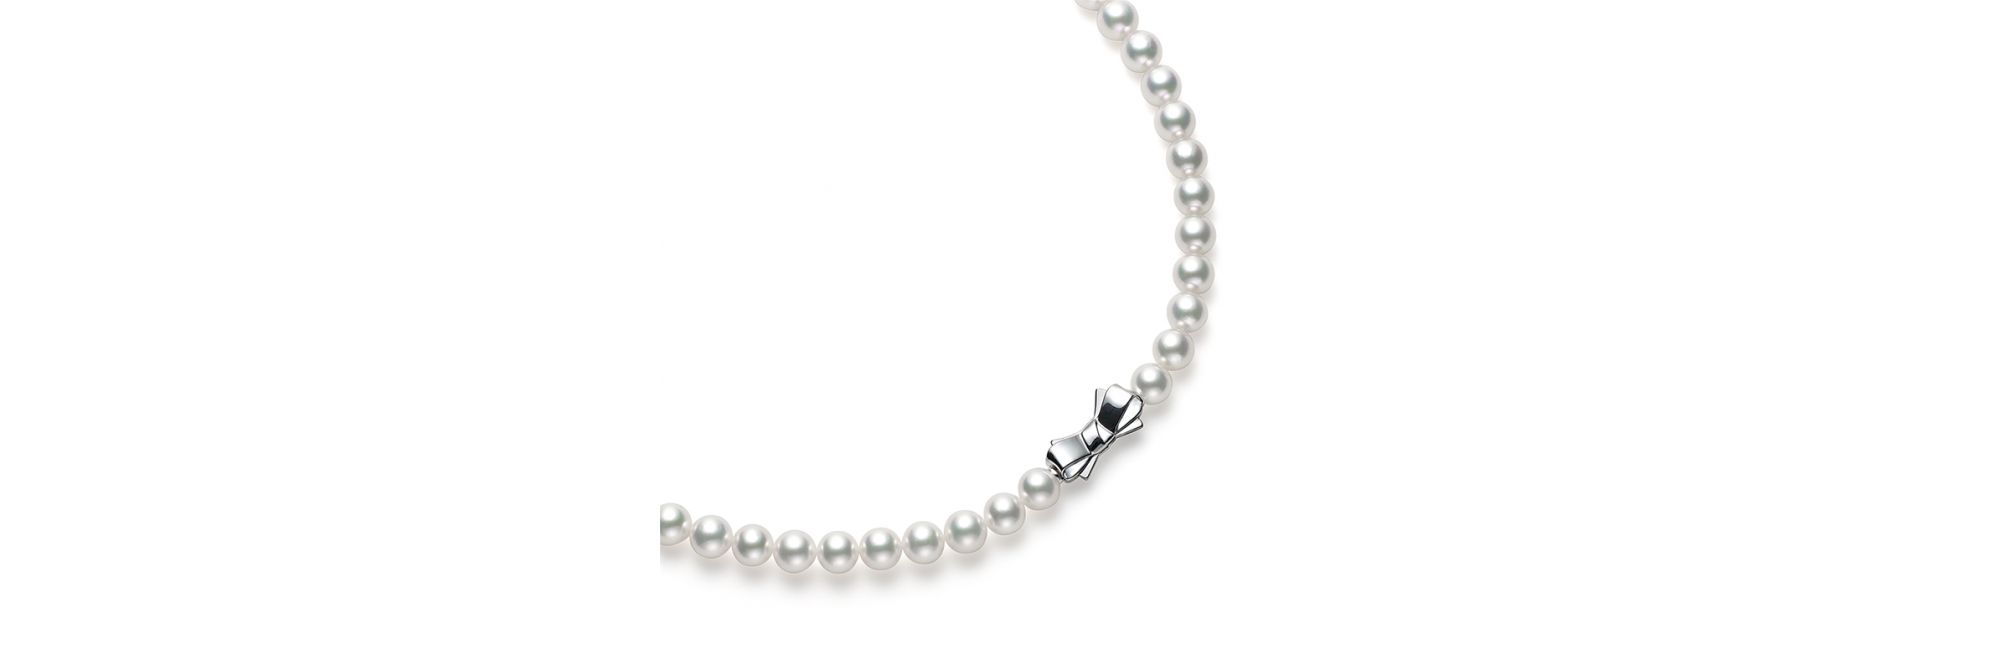 あこや真珠 ネックレス (7.5mm・グレードA) UR-075A-SIL|ネックレス 